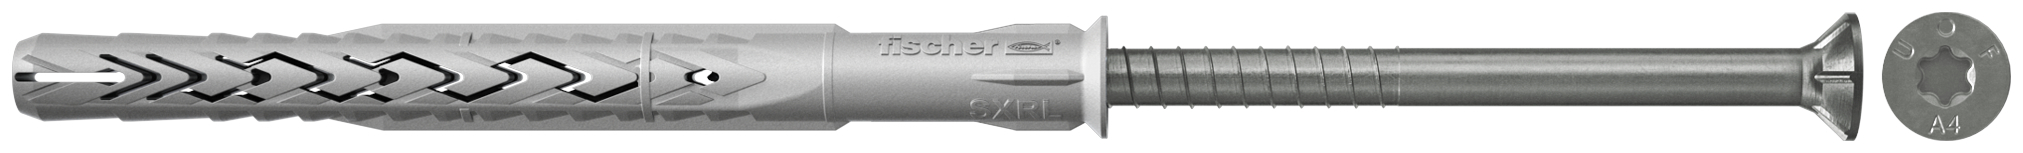 fischer Tasselli prolungati SXRL 10X80 T A4 (1 Pz.) Tassello prolungato in nylon con marcatura CE con vite premontata in acciaio inox A4, T.S.P. impronta torx fie2375